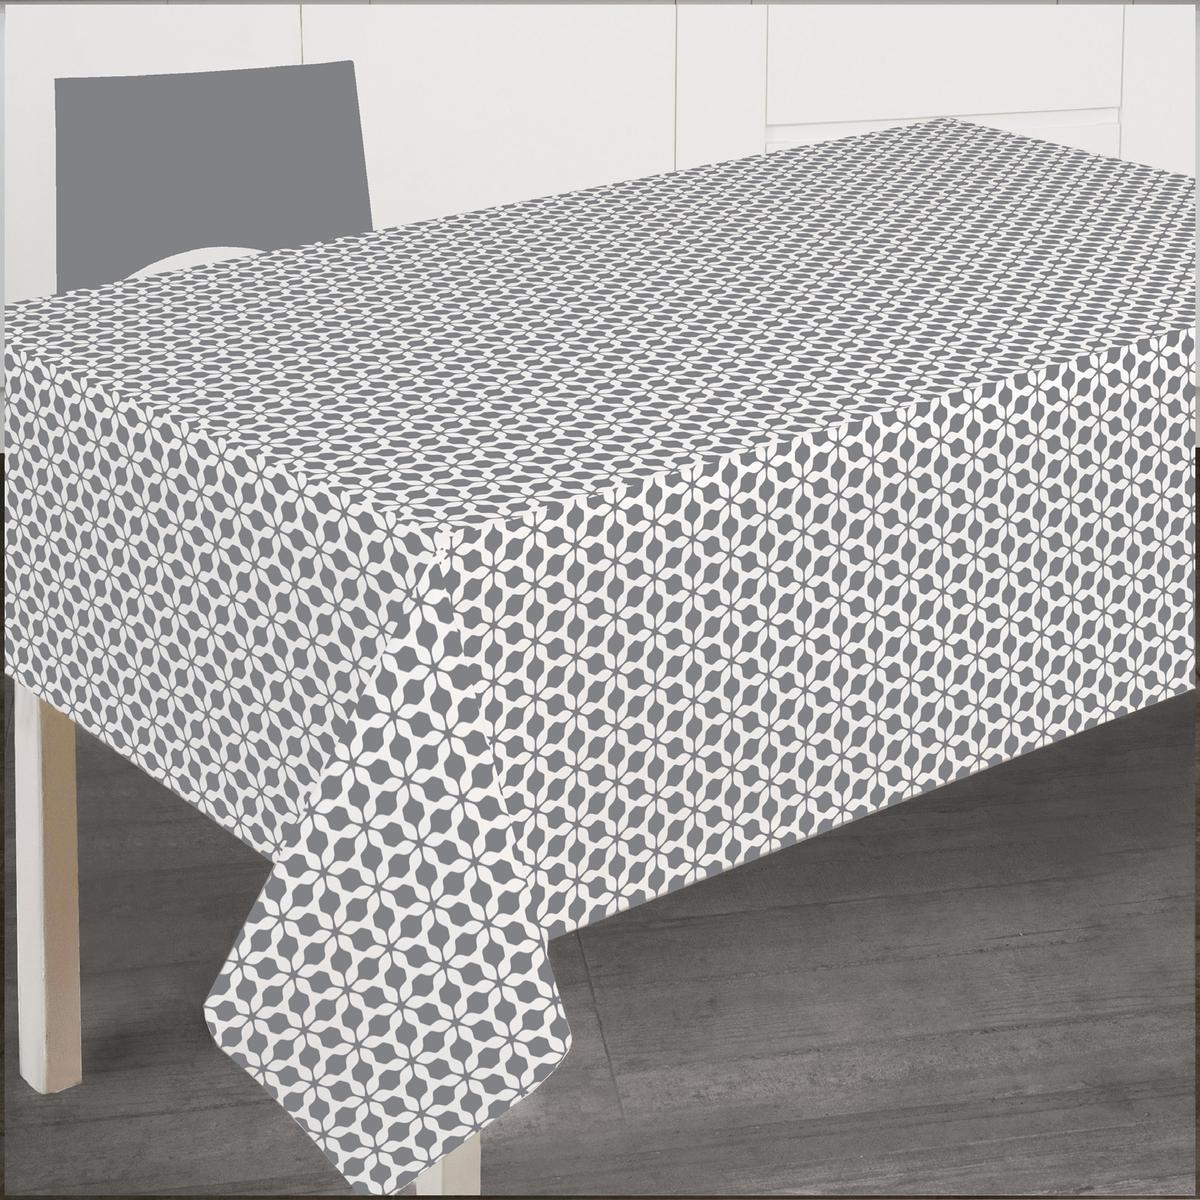 Nappe rectangulaire à motifs cristallins - L 240 x l 145 cm - Gris, blanc